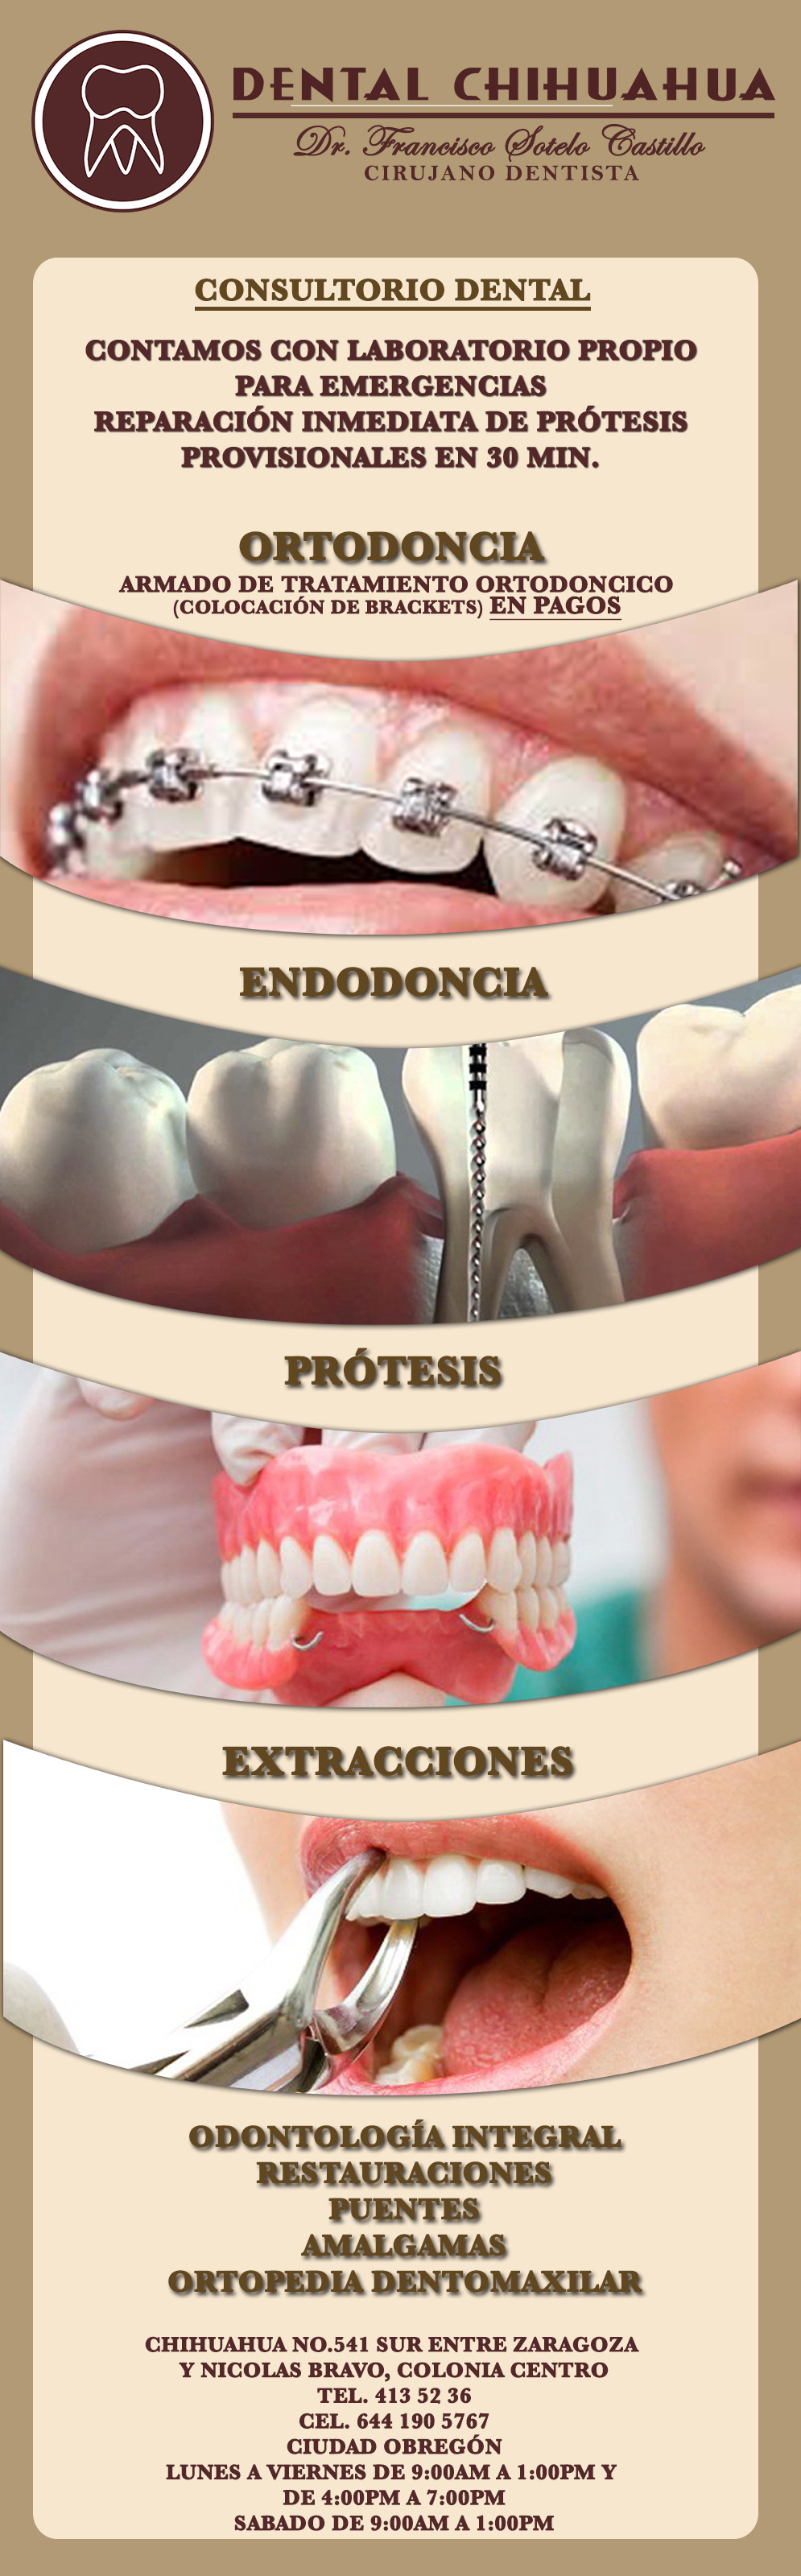 Dental Chihuahua Consultorio-Cirujano Dentista Contamos con Laboratorio Propio para Emergencias con acabados de 30 mins... Consultorio Dental, Ortodoncia, Endodoncia.               